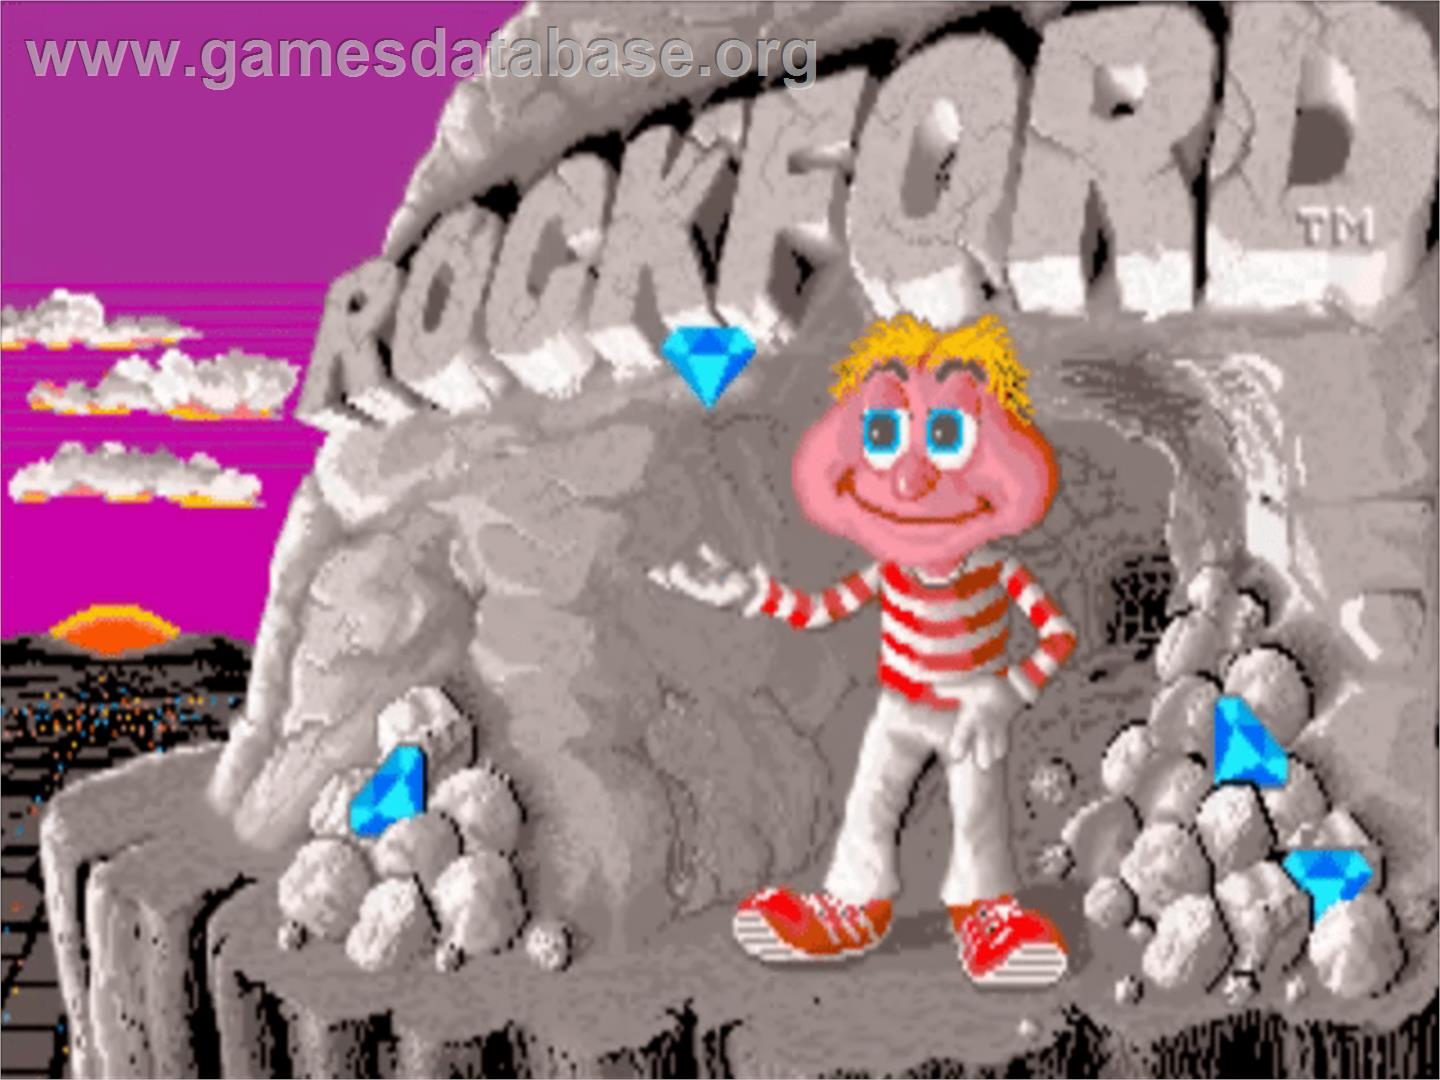 Rockford: The Arcade Game - Commodore Amiga - Artwork - Title Screen